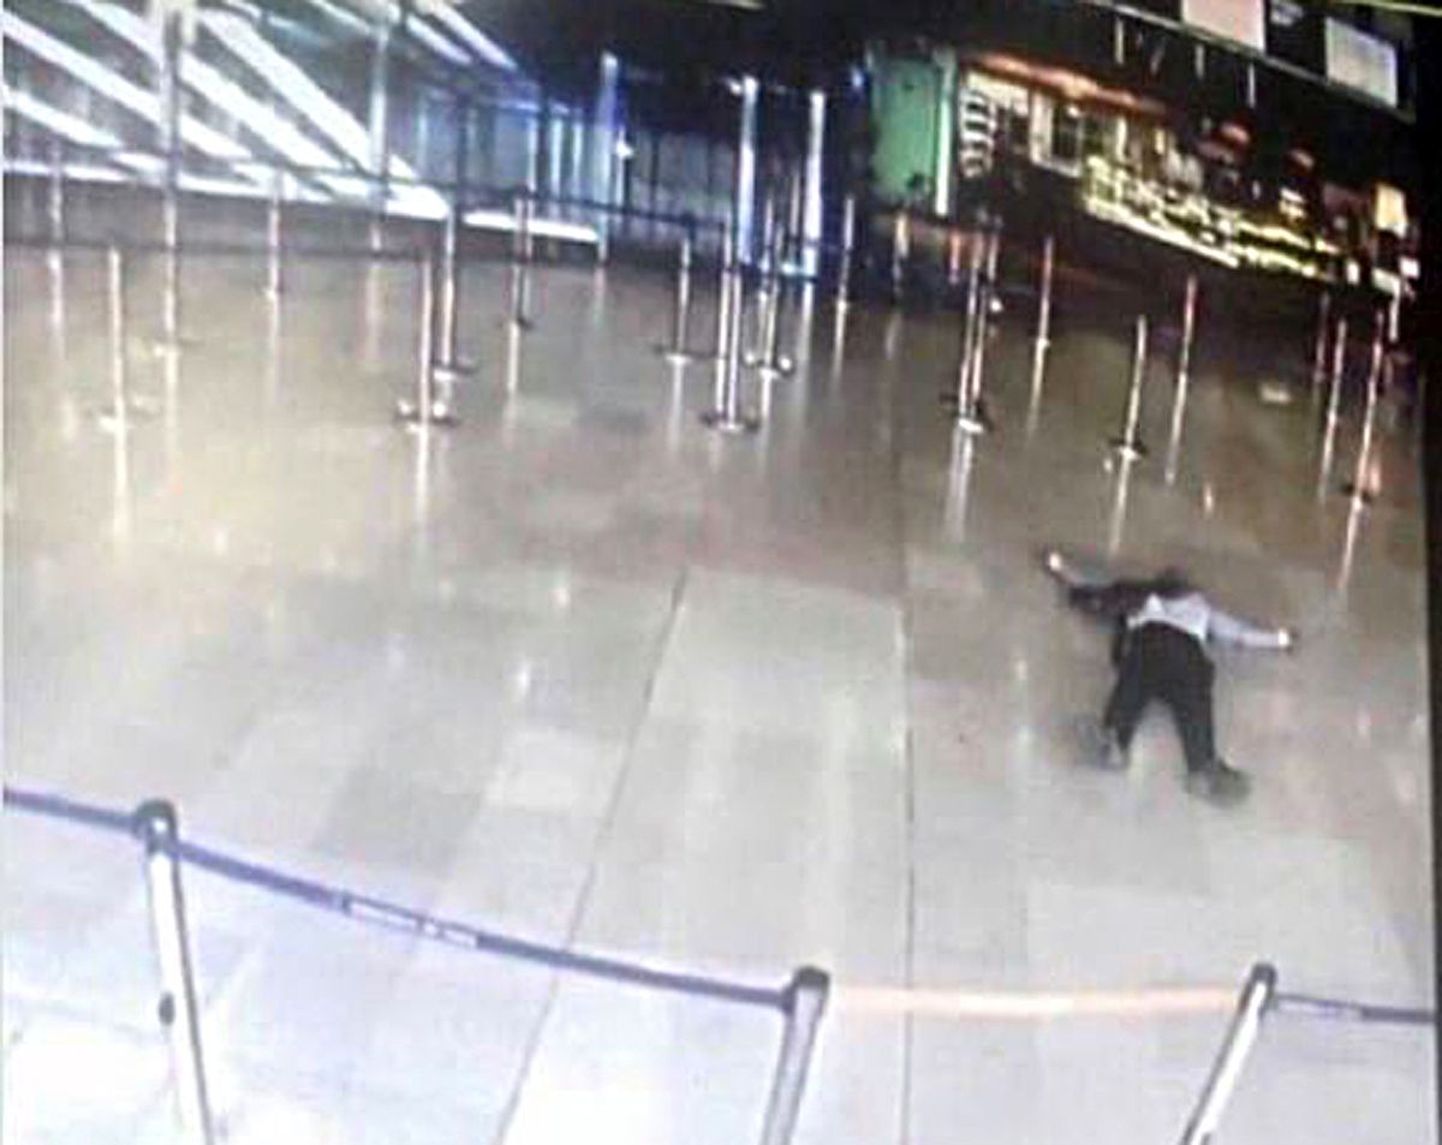 Orly lennujaamas julgeolekutöötajat rünnanud ja maha lastud Ziyed Ben Belgacem